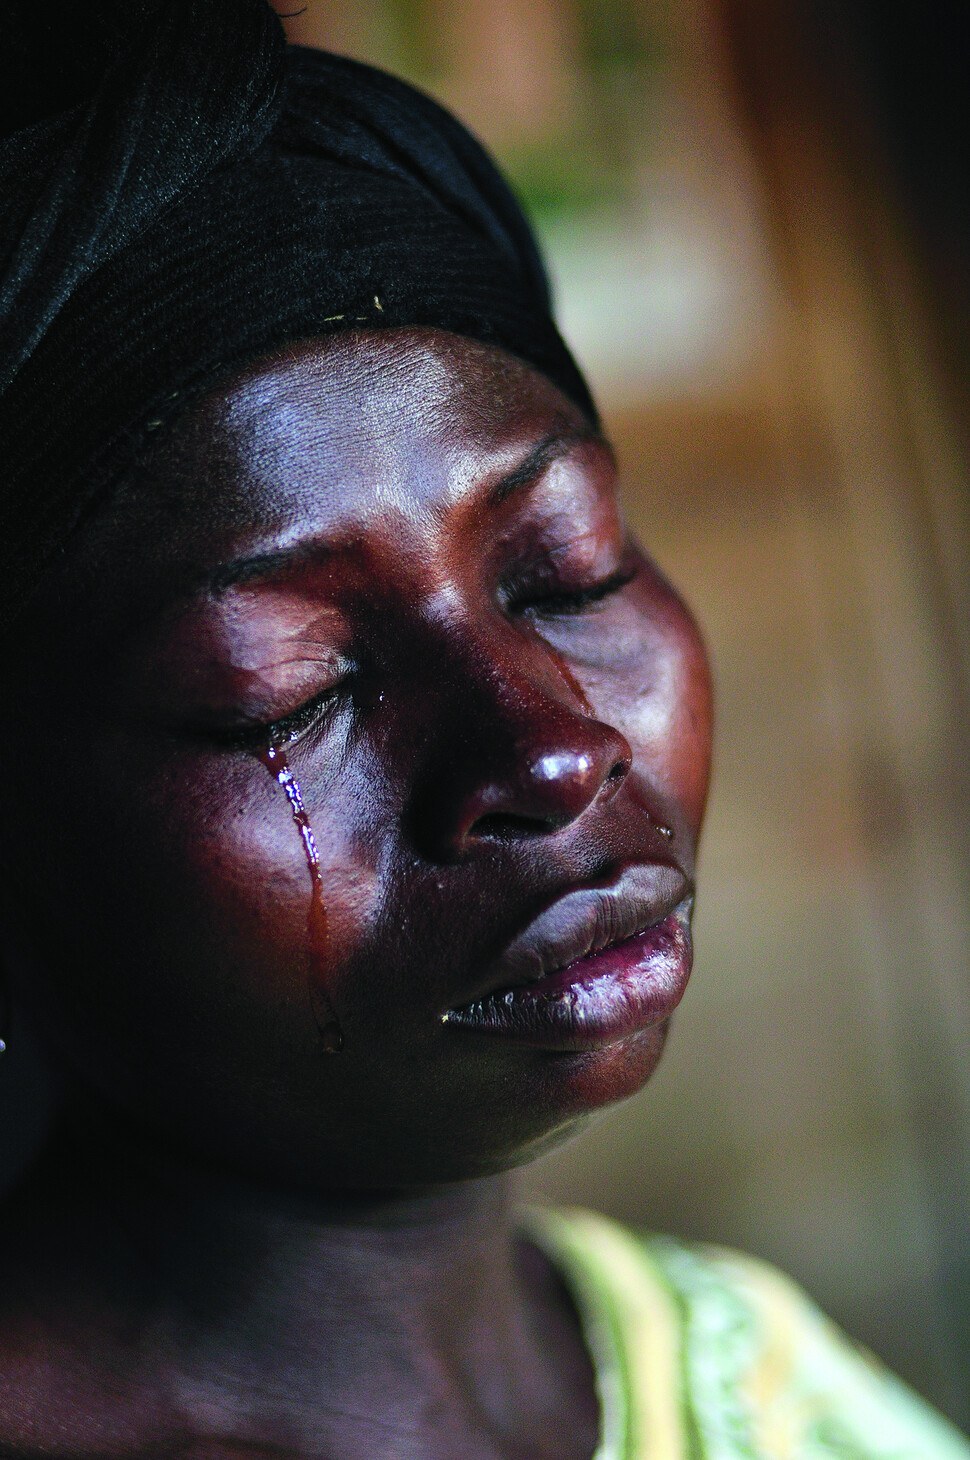 콩고 내전에서 정부군과 반군은 성폭행을 자신들의 권력을 표현하고 강화하는 수단으로 활용했다. 수많은 콩고 여성들이 성폭행을 당하고 그 이유로 가족에게 버림받았다. 성폭행으로 임신해 낳은 아이를 잃고 눈물을 흘리는 콩고 여성 비비안. 2006년. 사진 린지 아다리오, 문학동네 제공